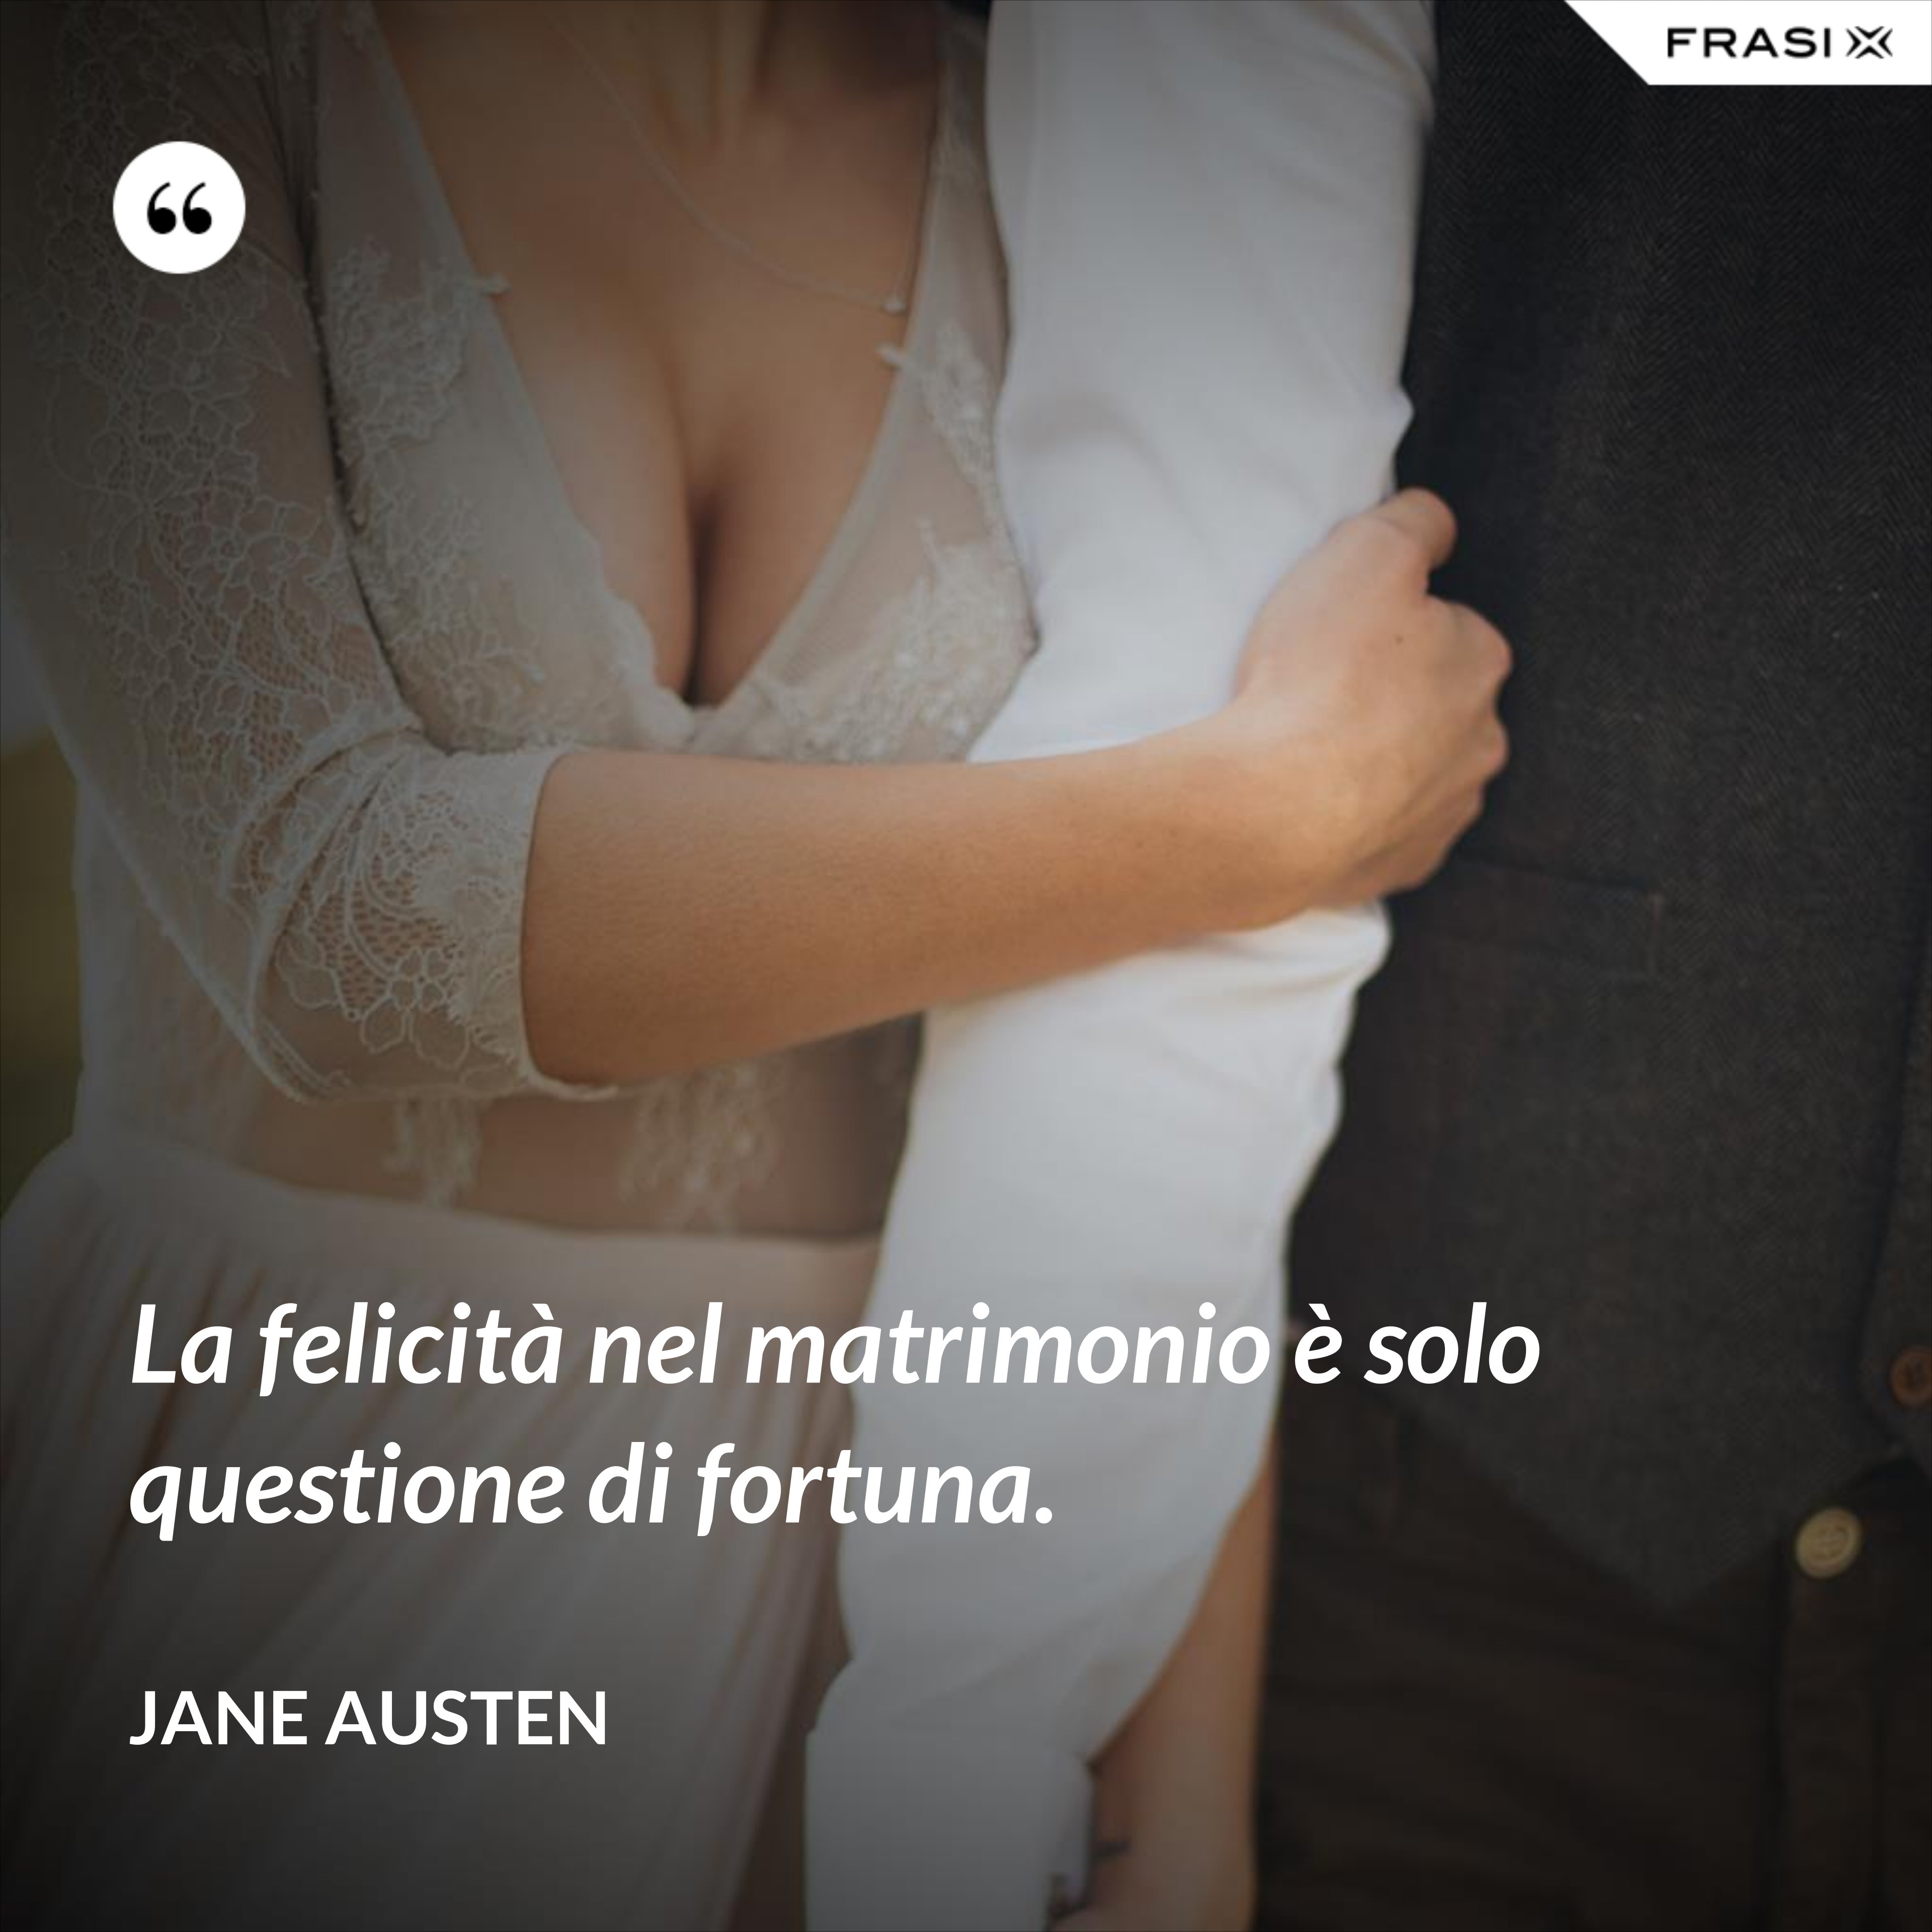 La felicità nel matrimonio è solo questione di fortuna. - Jane Austen